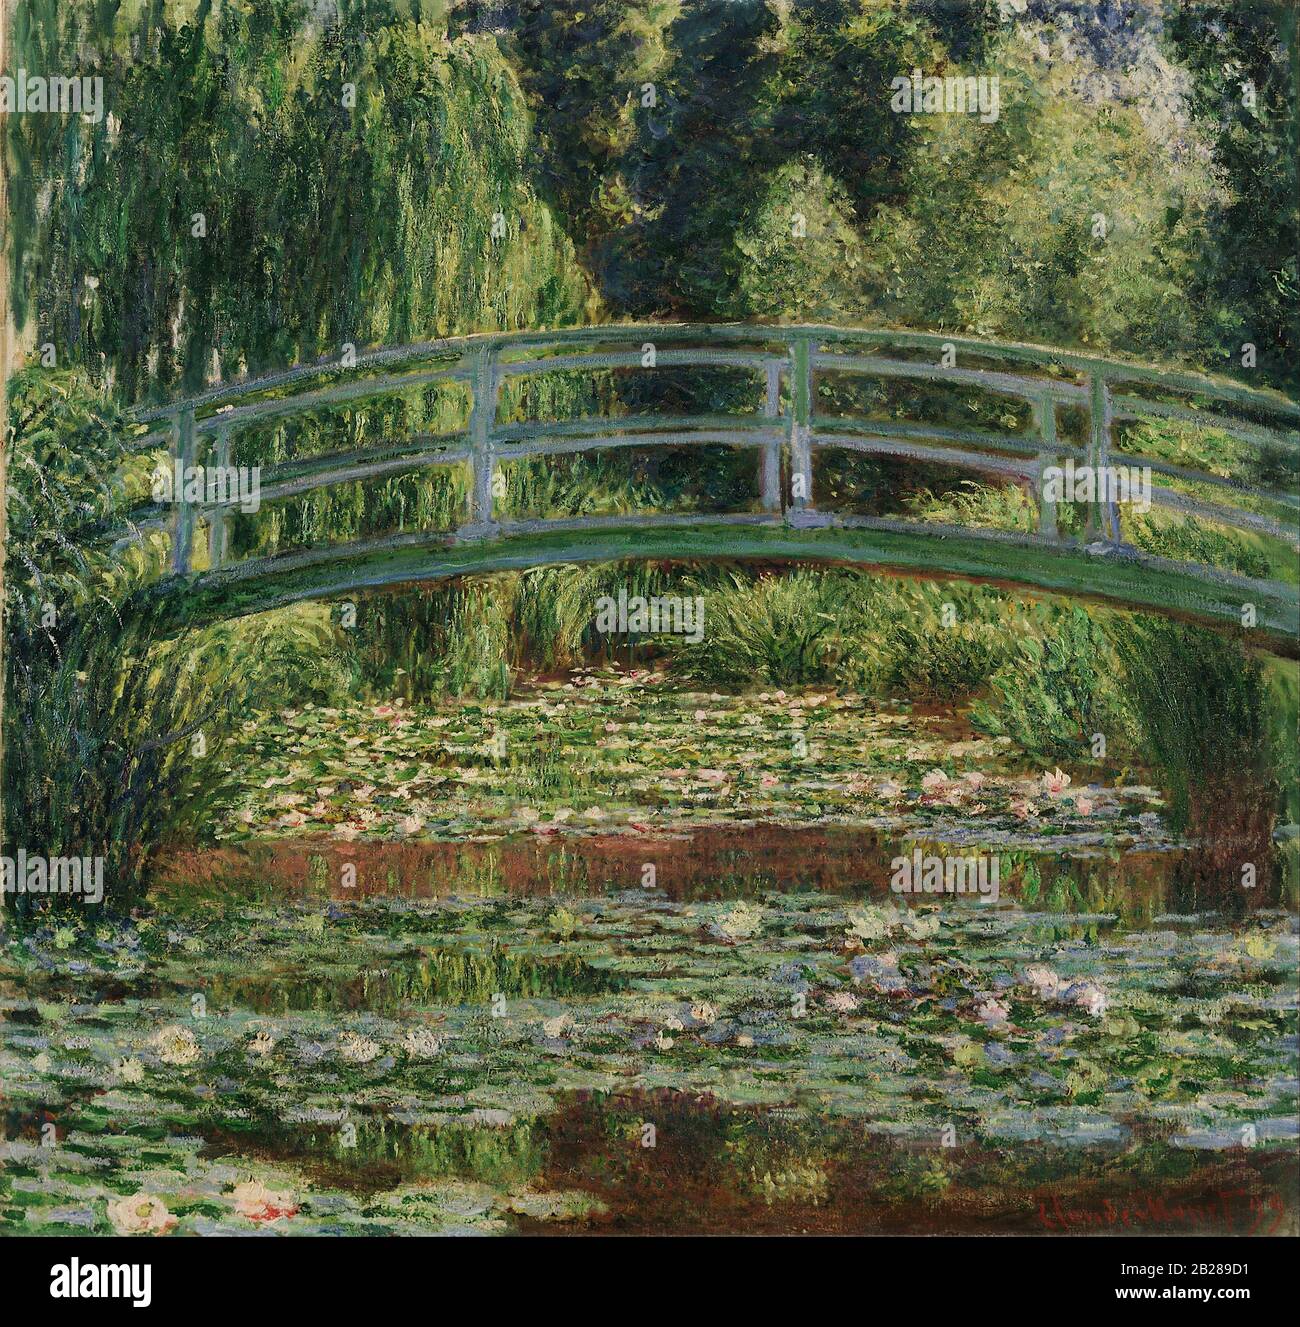 Le Pont à pied japonais et la piscine de nénuphars, Giverny (1899) Peinture de Claude Monet - Très haute résolution et image de qualité Banque D'Images